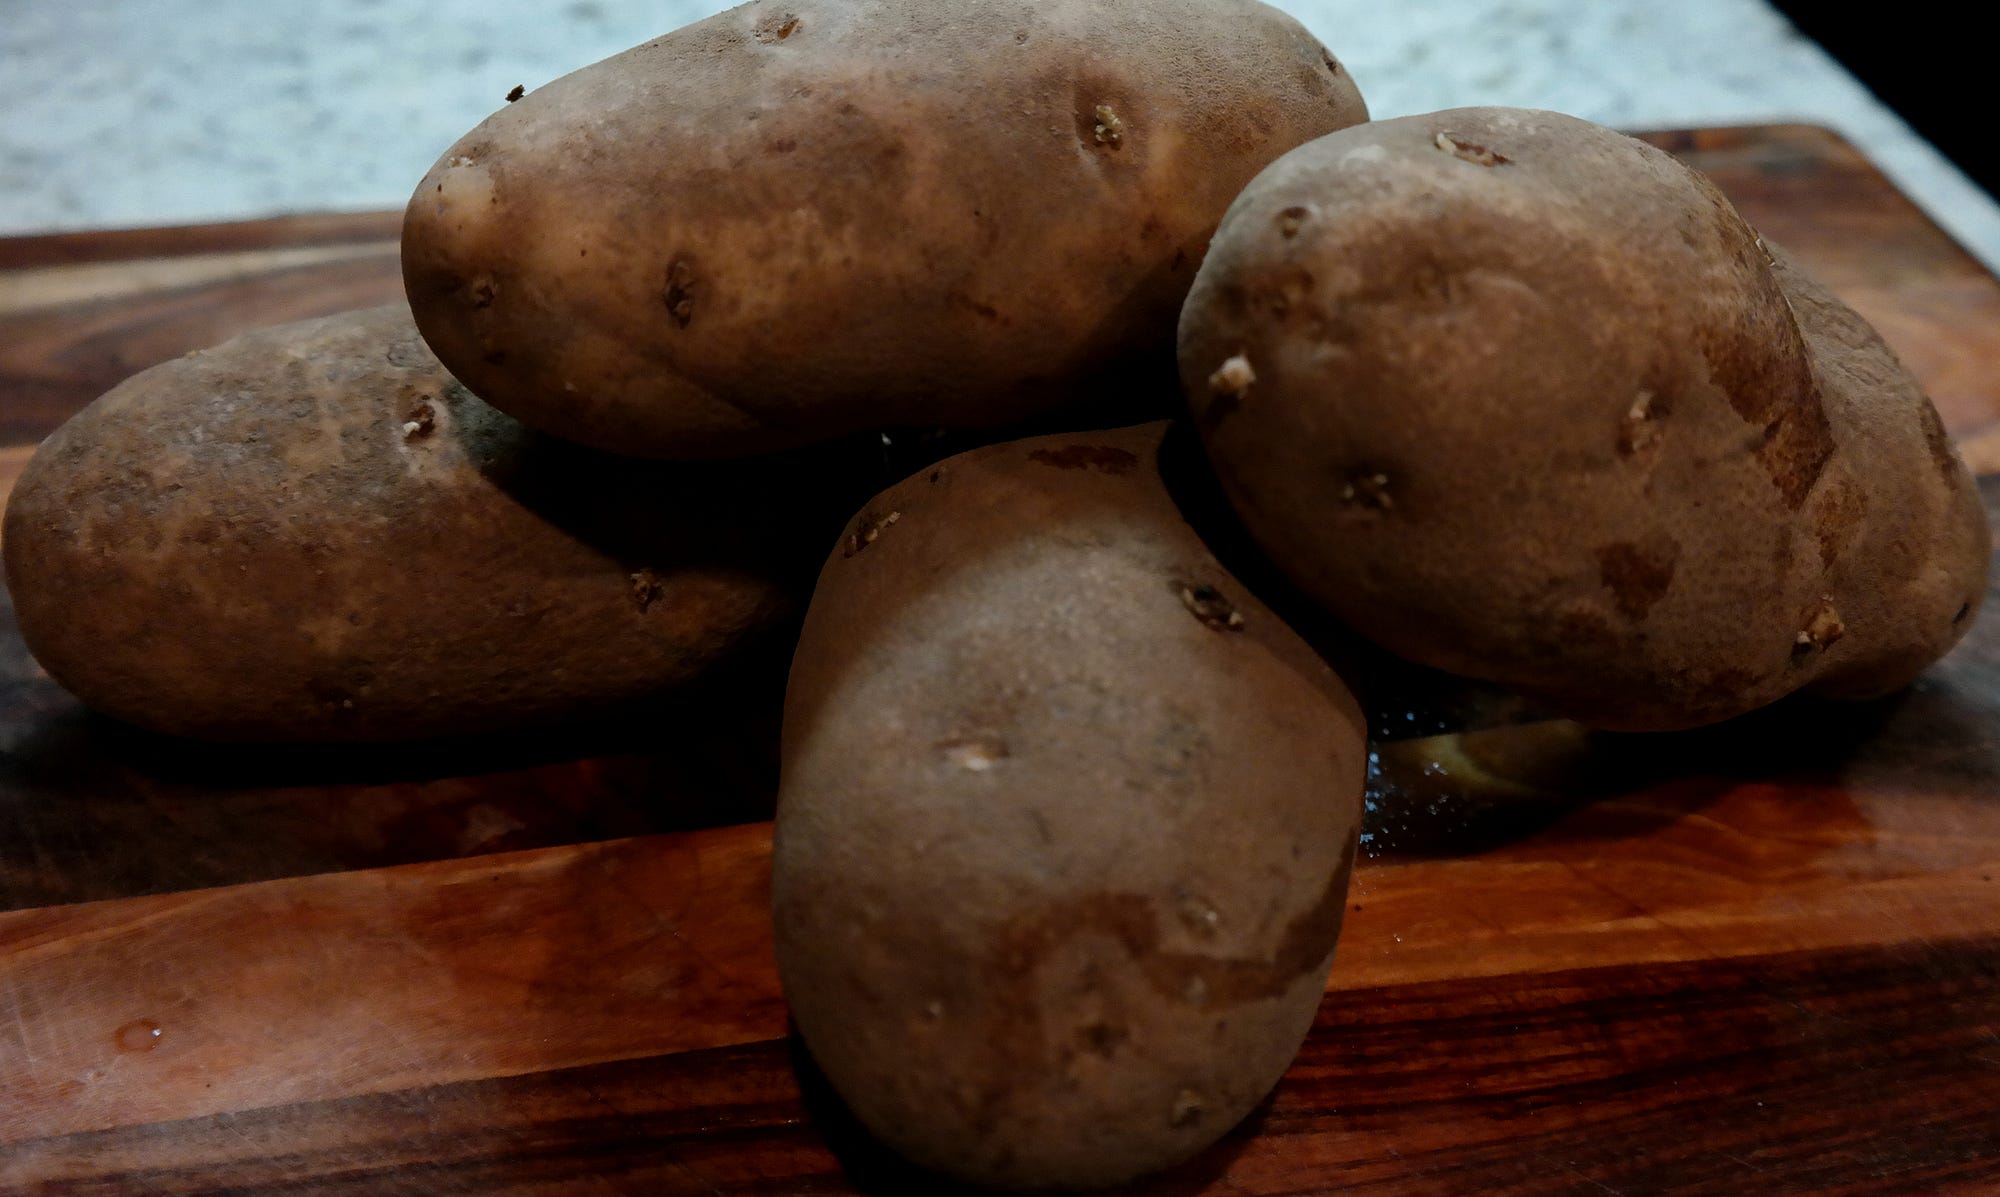 Russet potato - Wikipedia